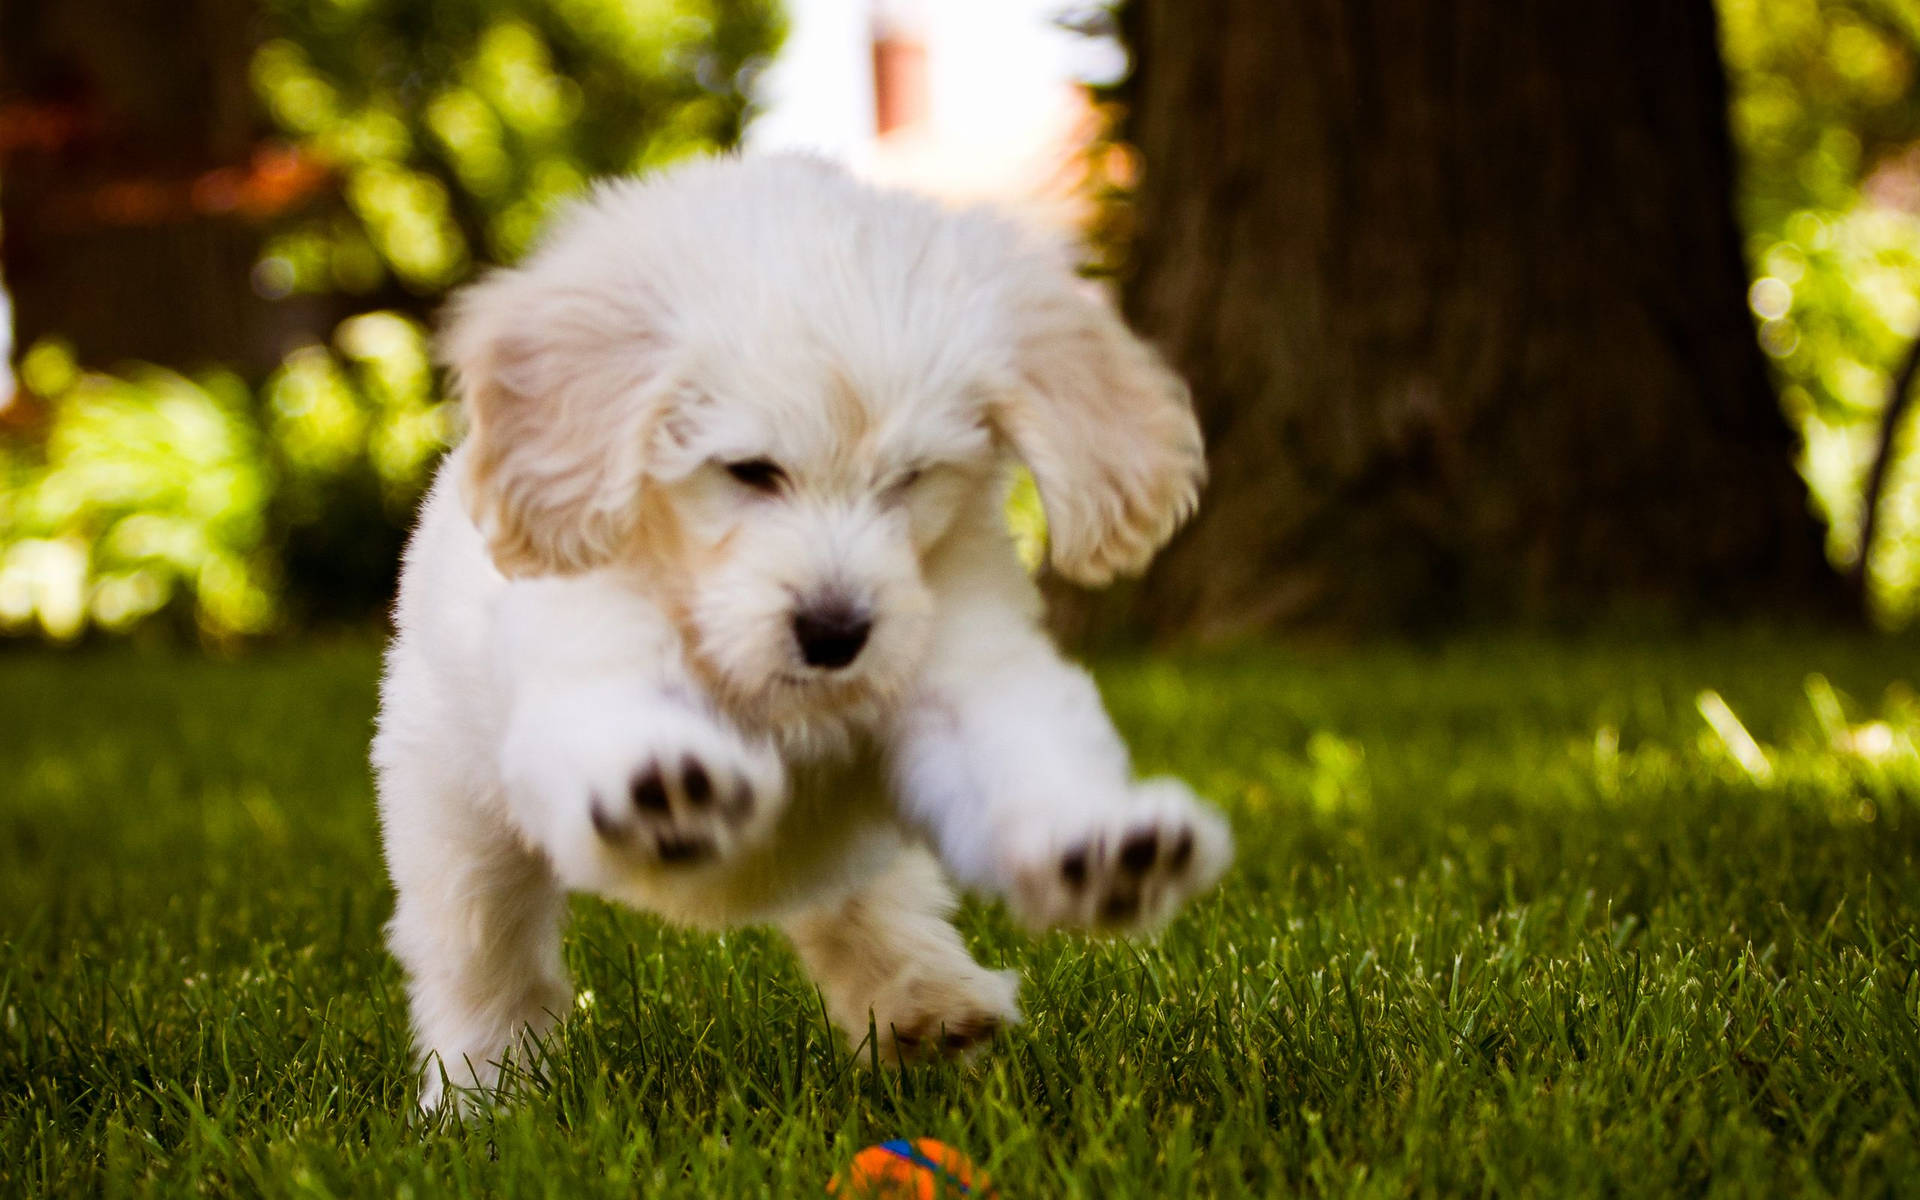 Cute Dog Running On Grass